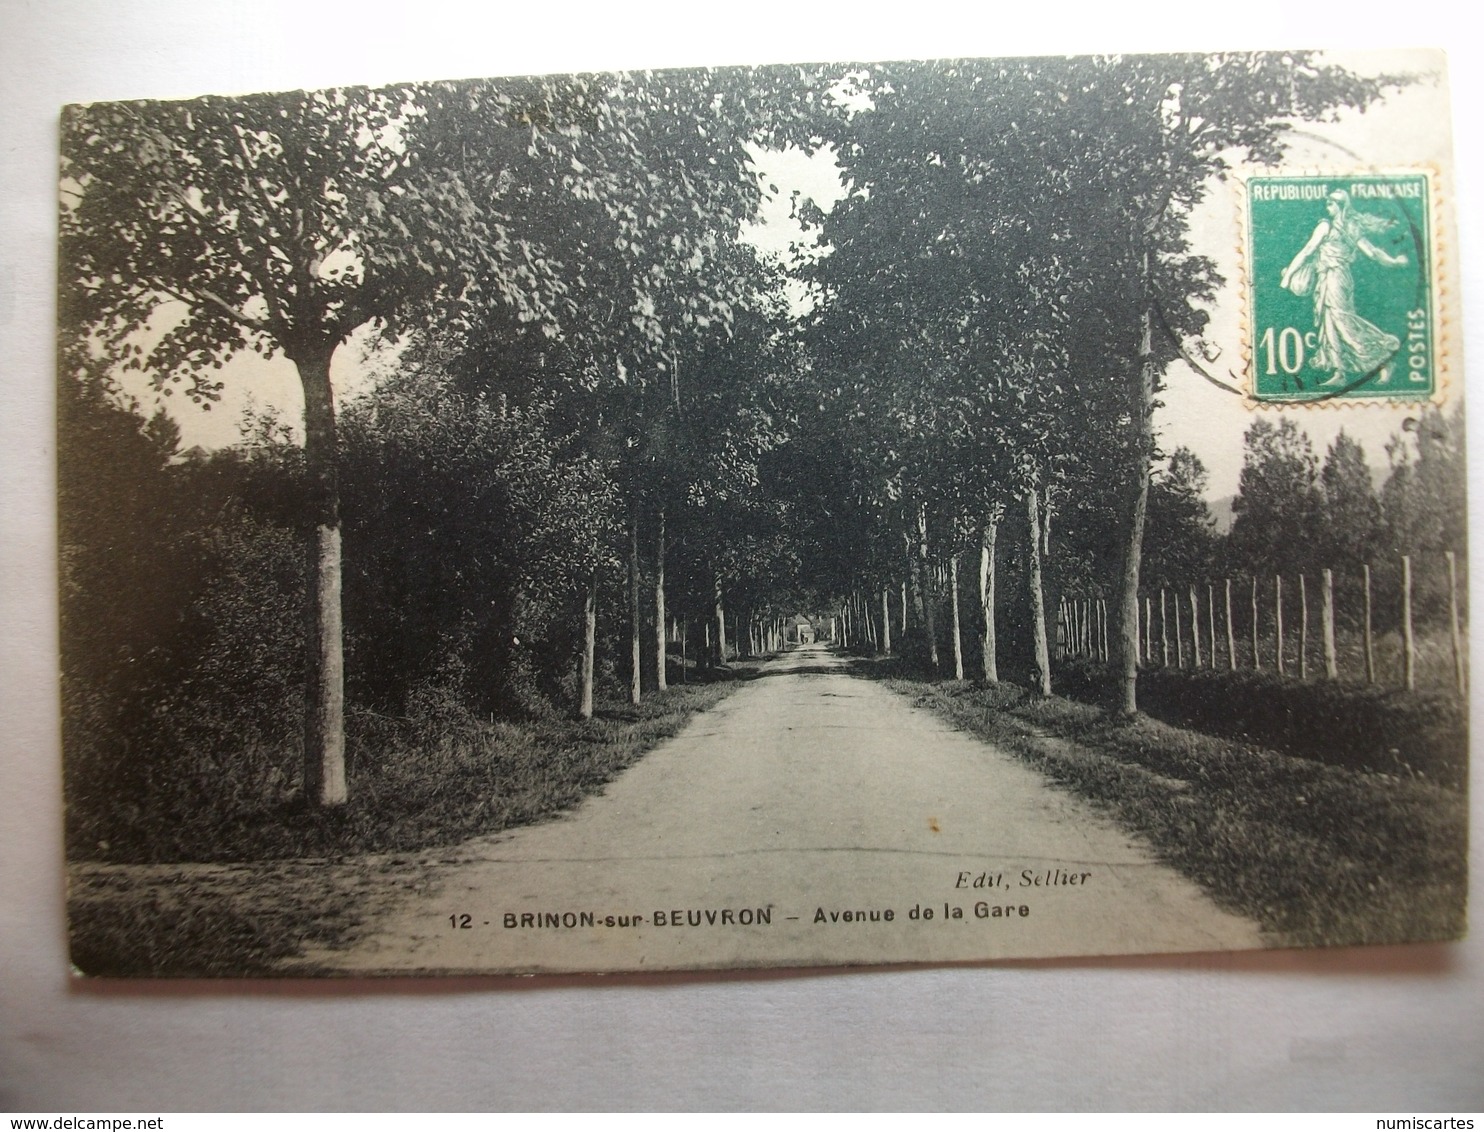 Carte Postale Brinon Sur Beuvron (58) Avenue De La Gare (Petit Format Noir Et Blanc Oblitérée Timbre 10 Centimes ) - Brinon Sur Beuvron